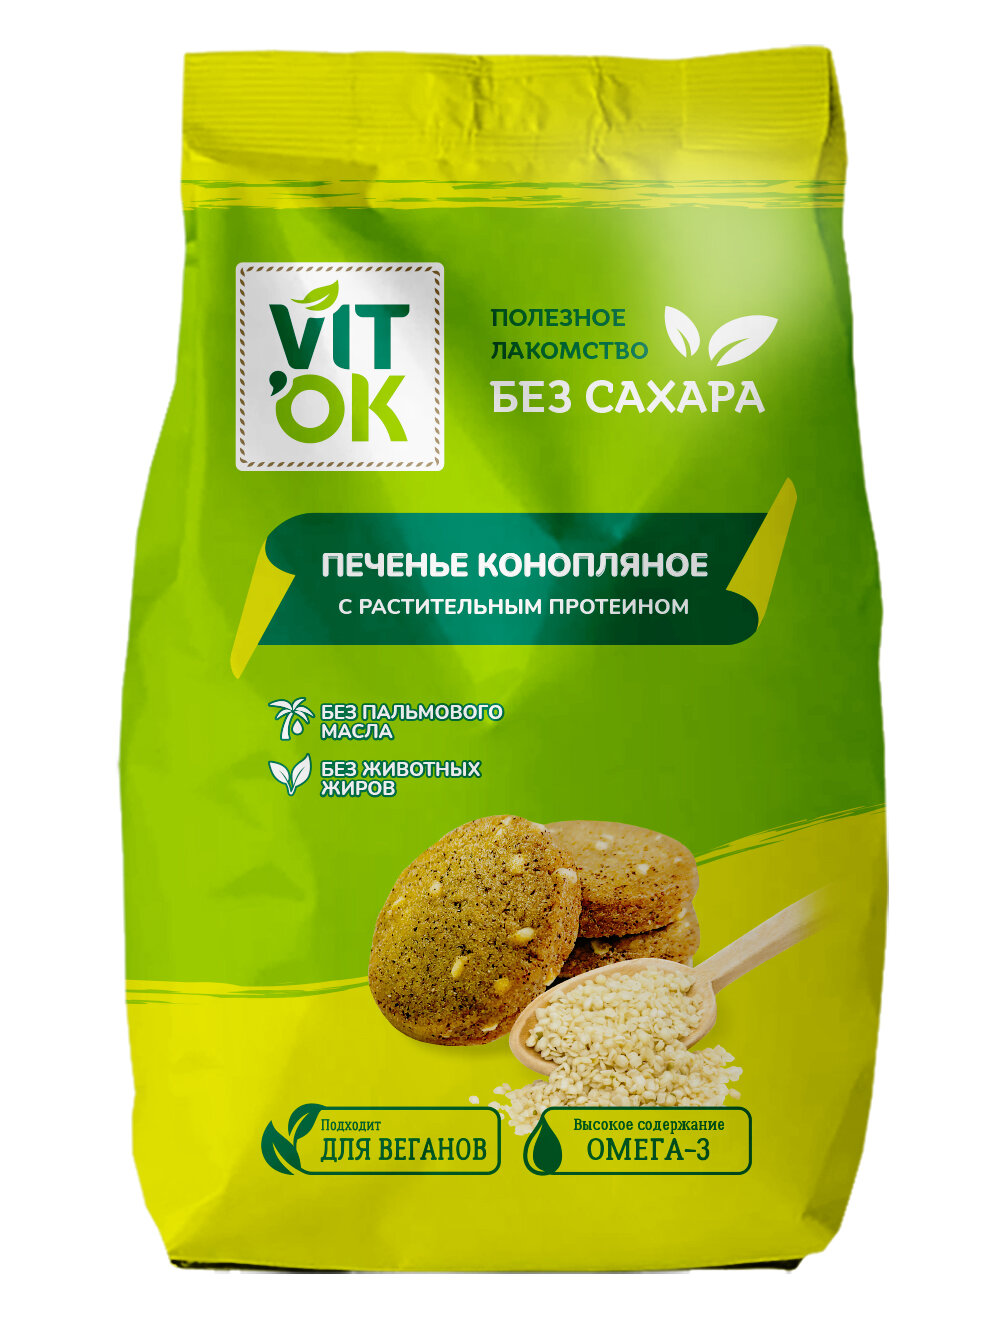 Печенье Vitok полезное натуральное без сахара ассорти протеиновое в коробке, 2 шт по 300 г